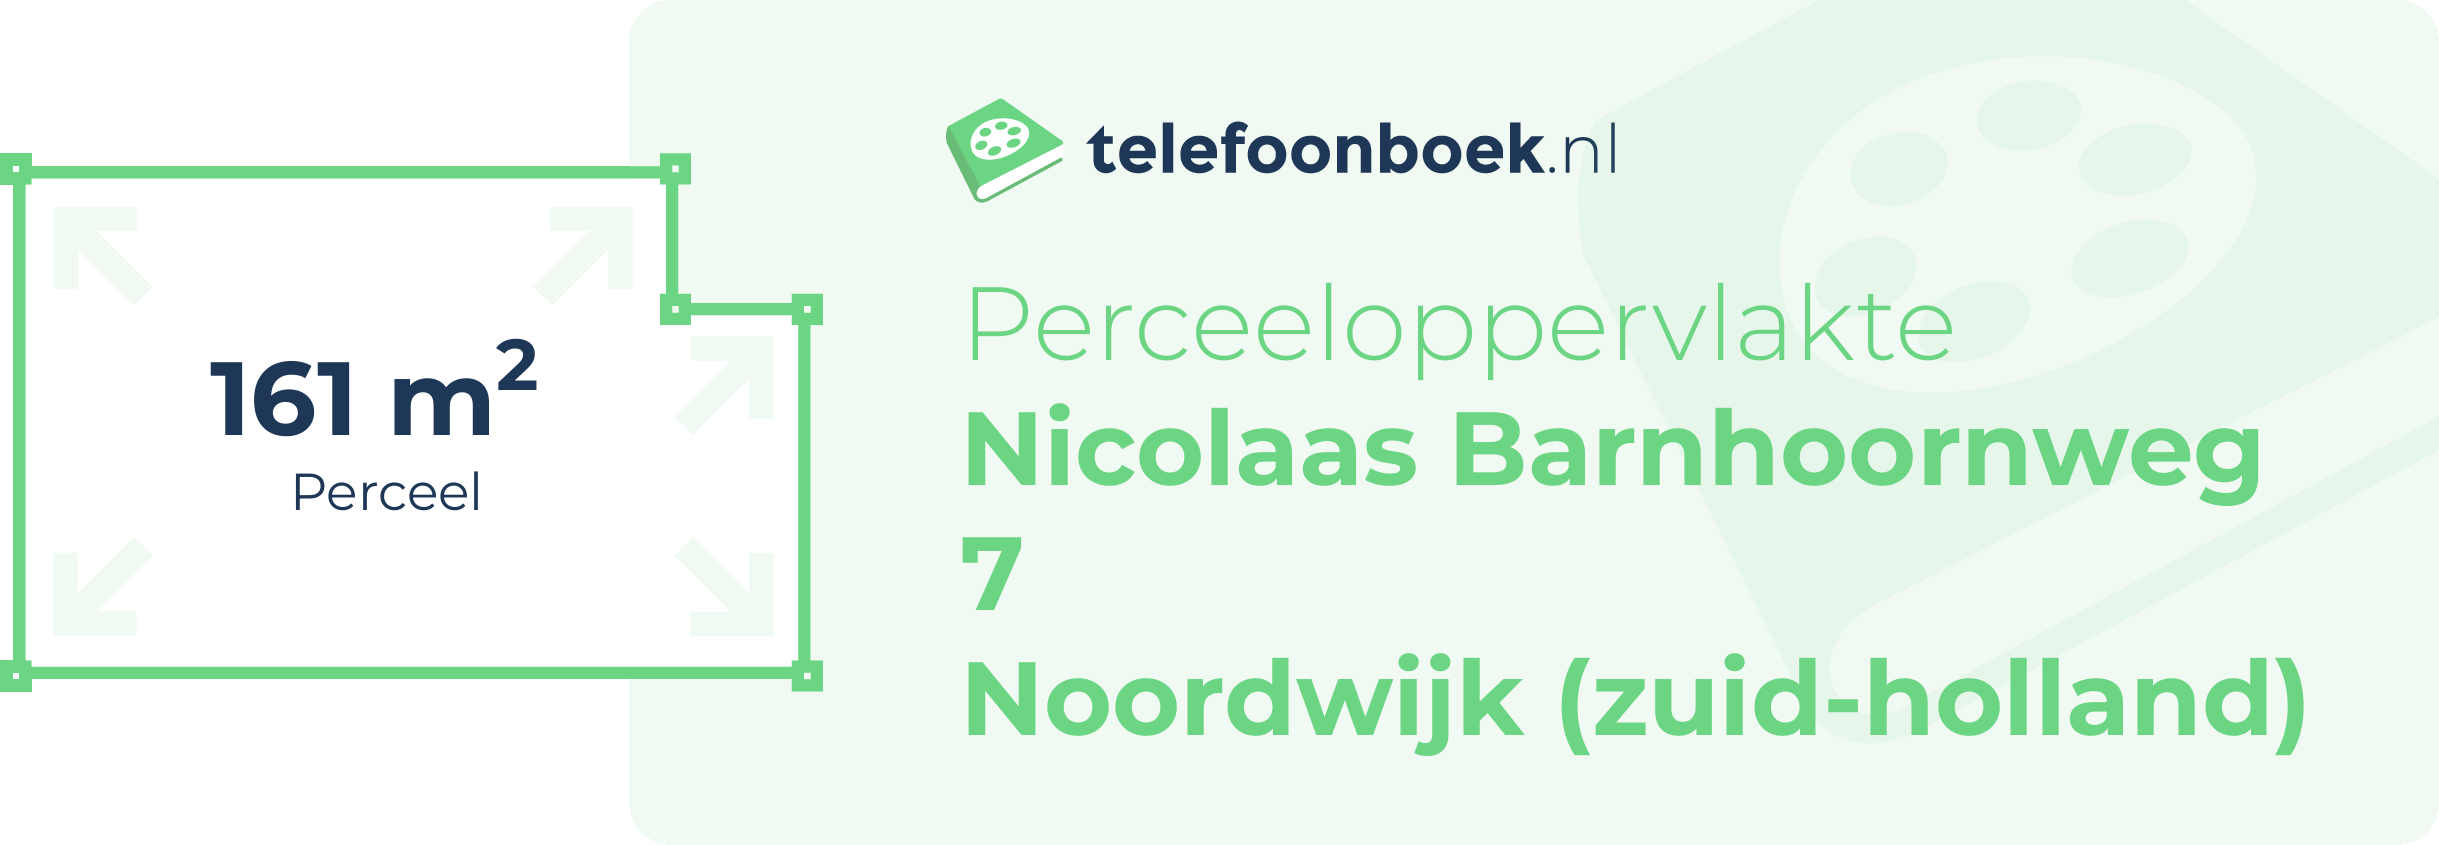 Perceeloppervlakte Nicolaas Barnhoornweg 7 Noordwijk (Zuid-Holland)